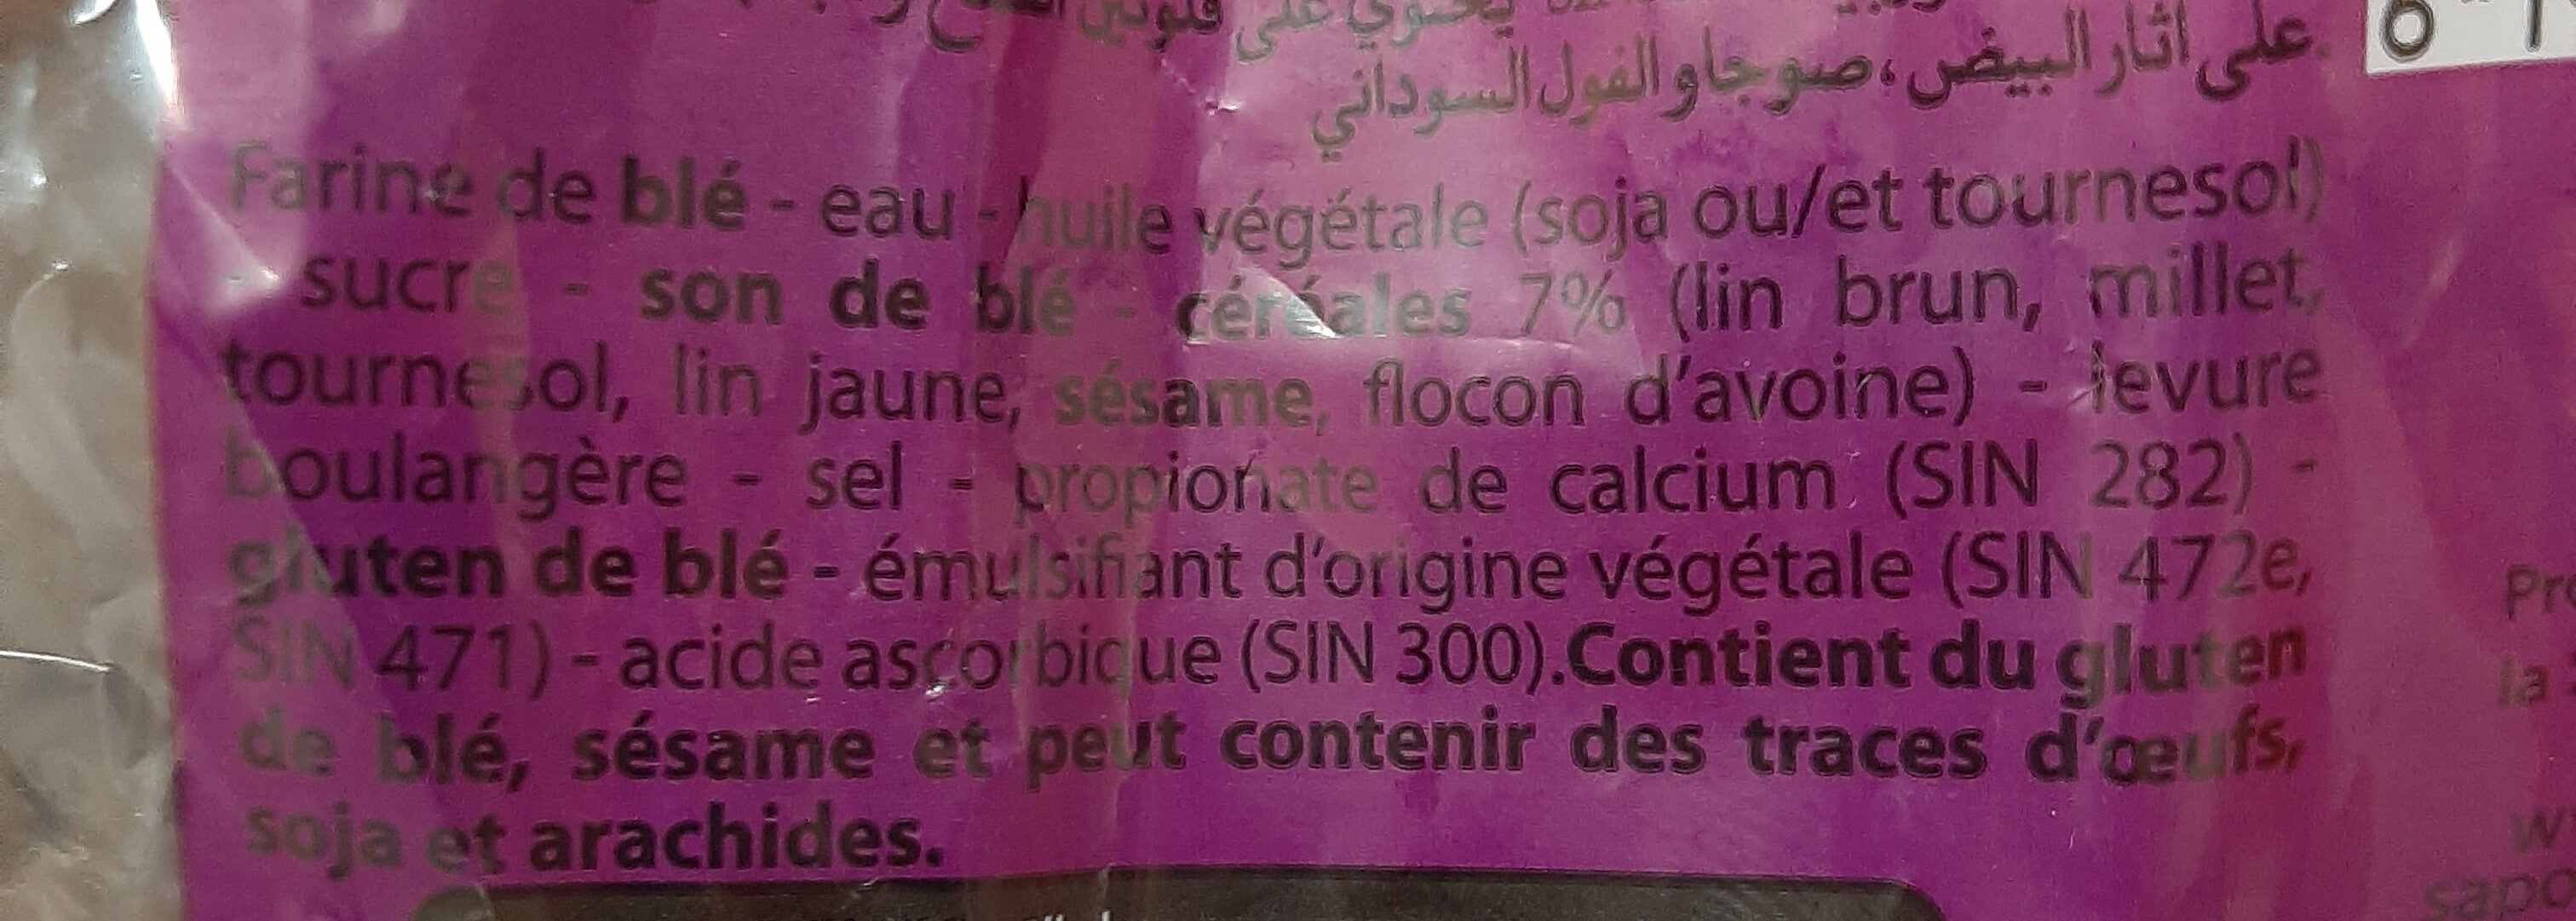 Pain de mie aux flocons d'avoine - Ingredients - fr